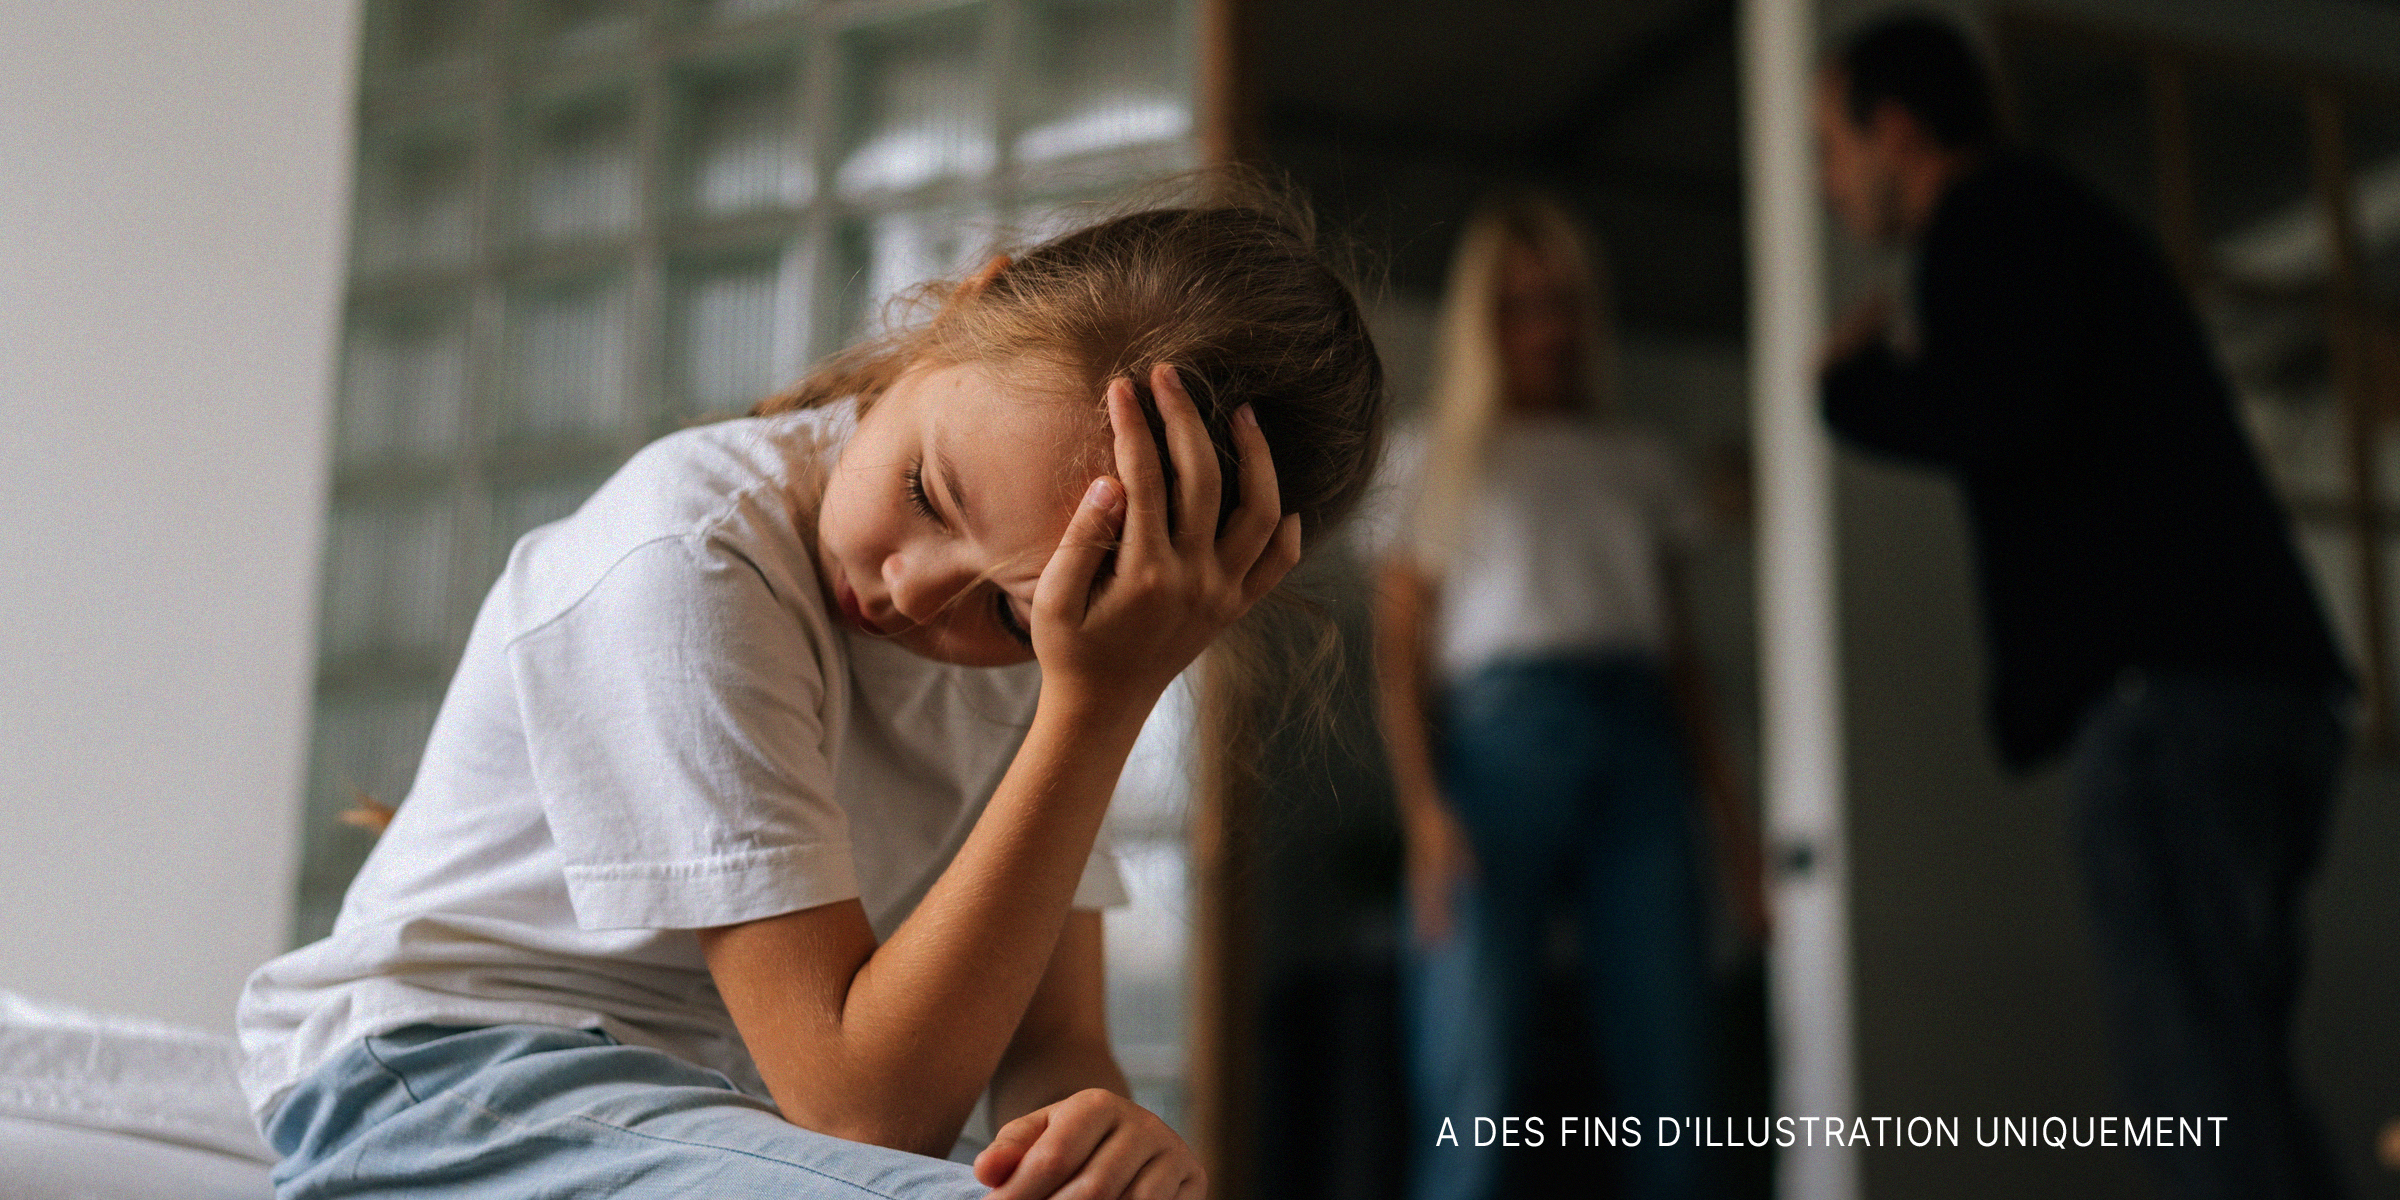 Une petite fille bouleversée tandis que ses parents se disputent en arrière-plan | Source : Shutterstock